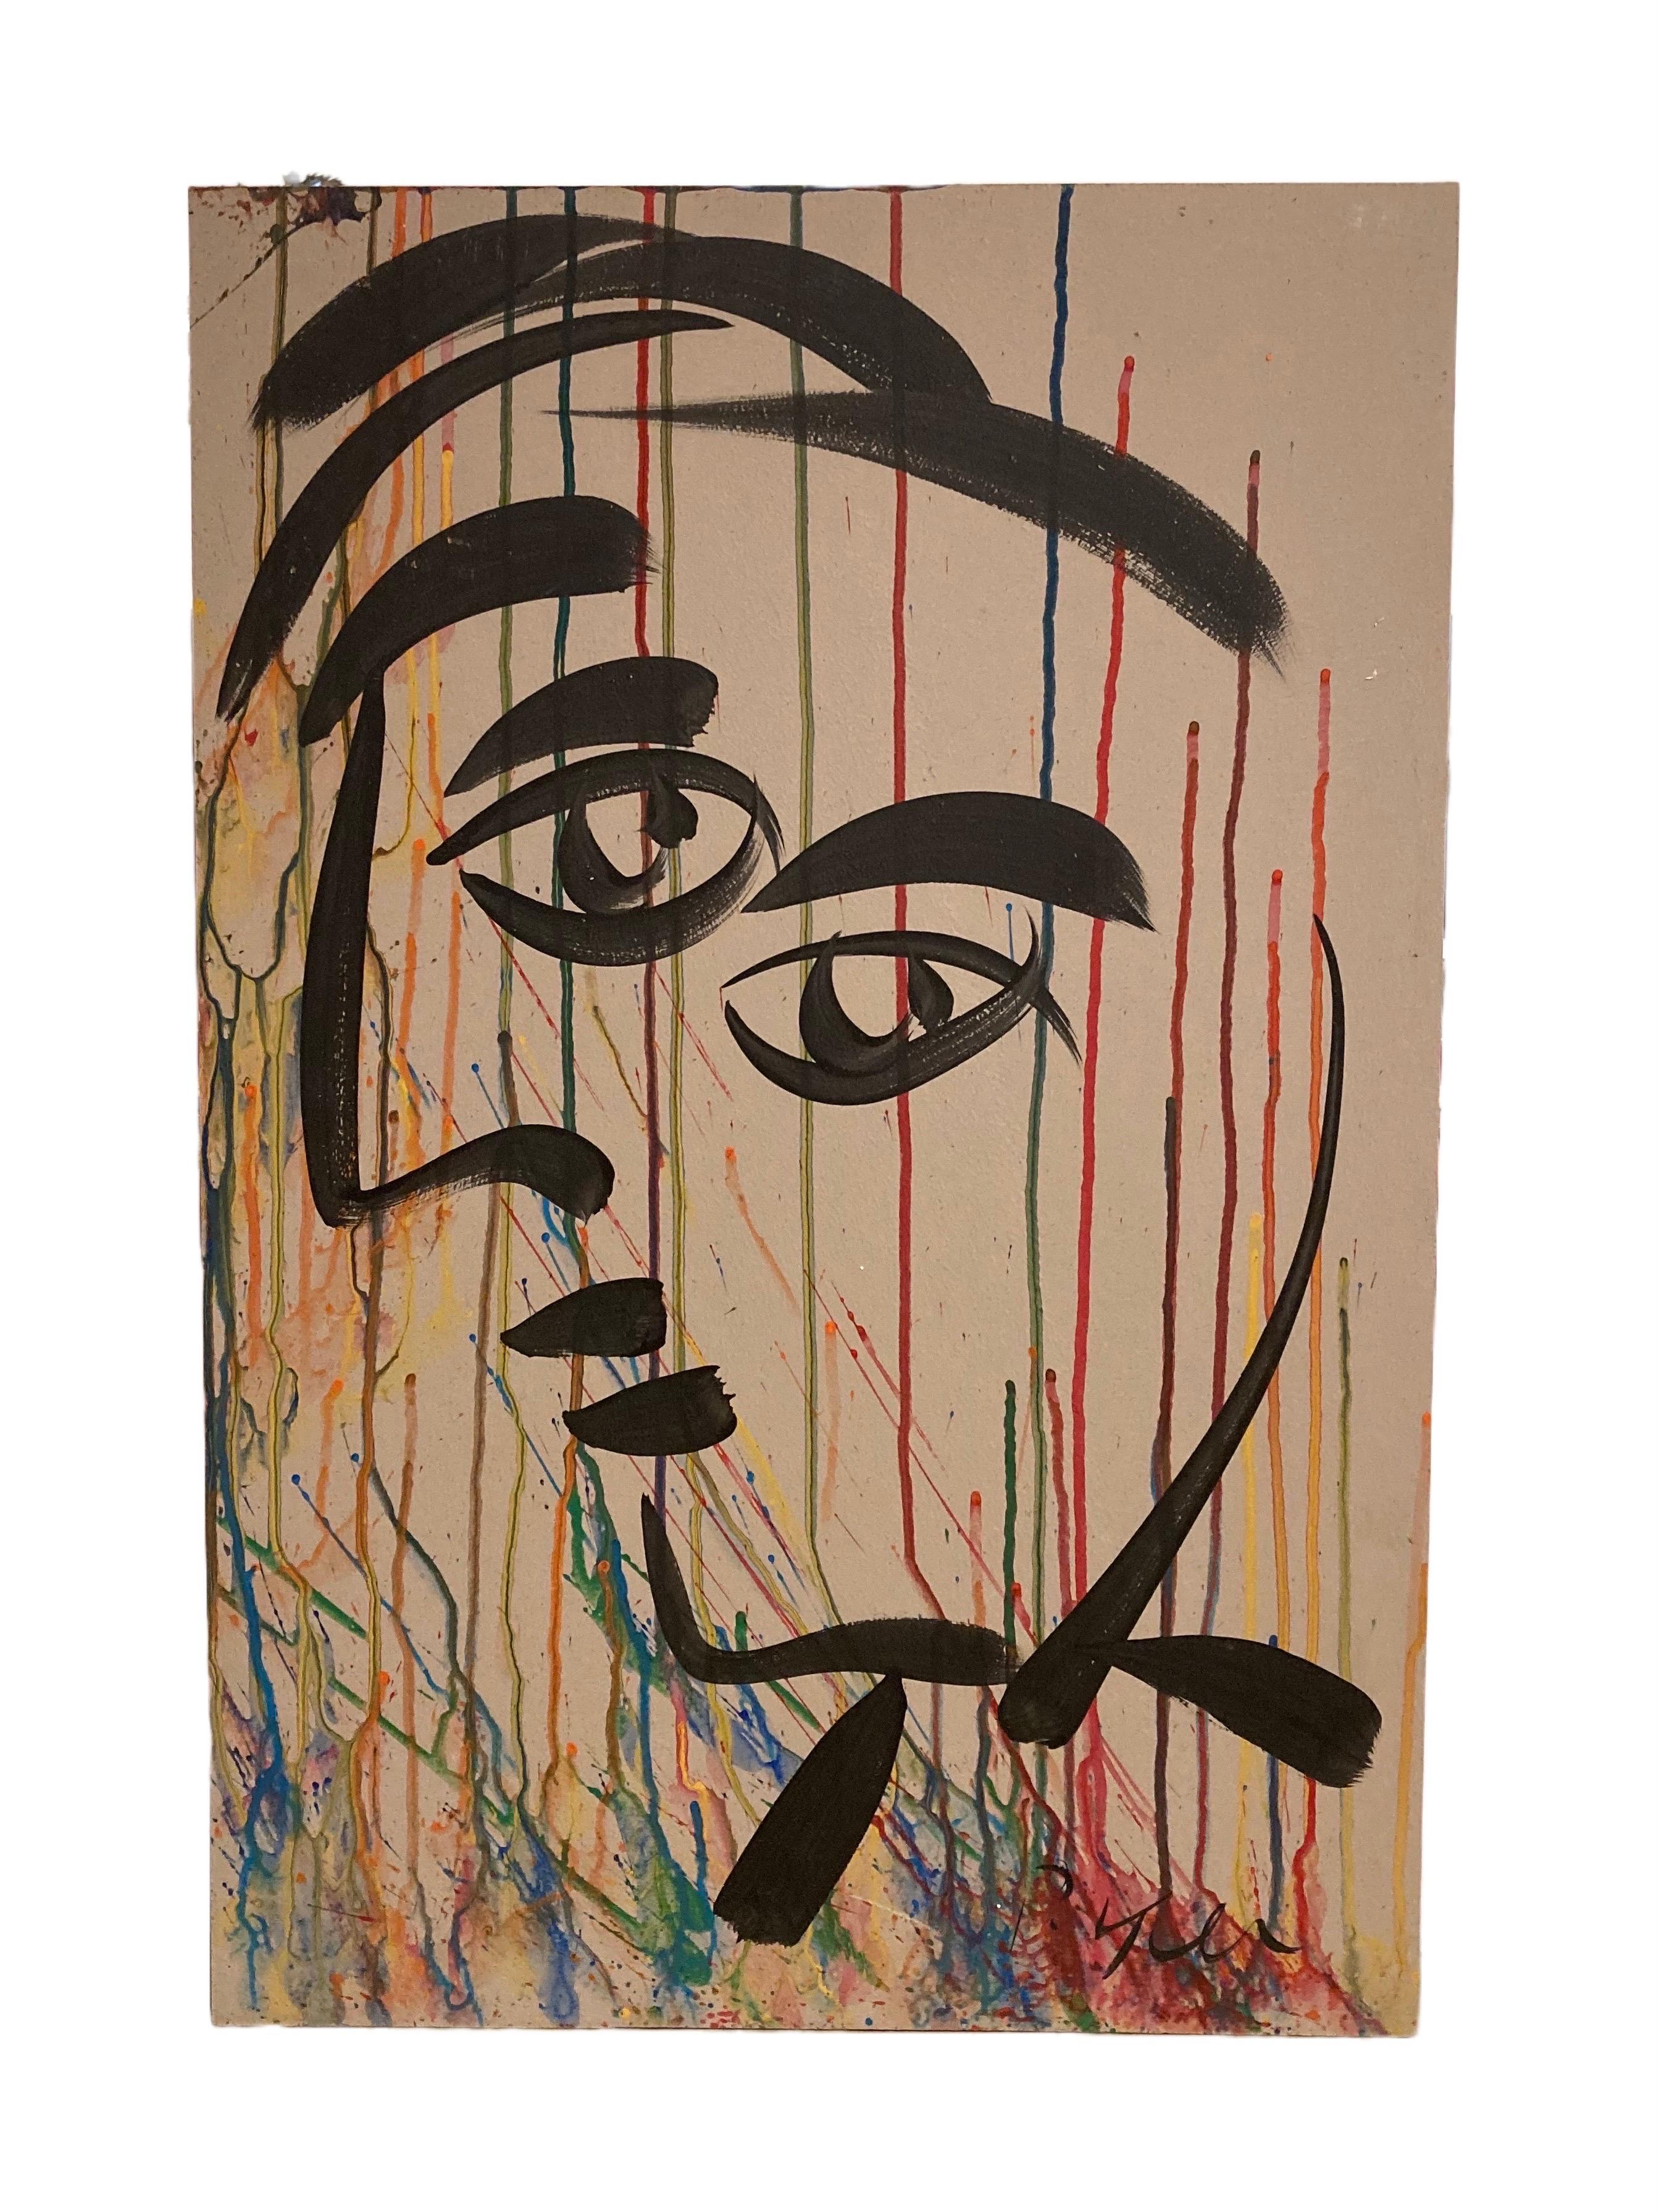 Cette peinture abstraite moderne de Peter Keil repose sur un carton masonite lisse sur un fond taupe, un portrait abstrait noir et recouvert de nombreuses couleurs. Ici, vous verrez certainement l'inspiration de Picasso pour laquelle Keil est